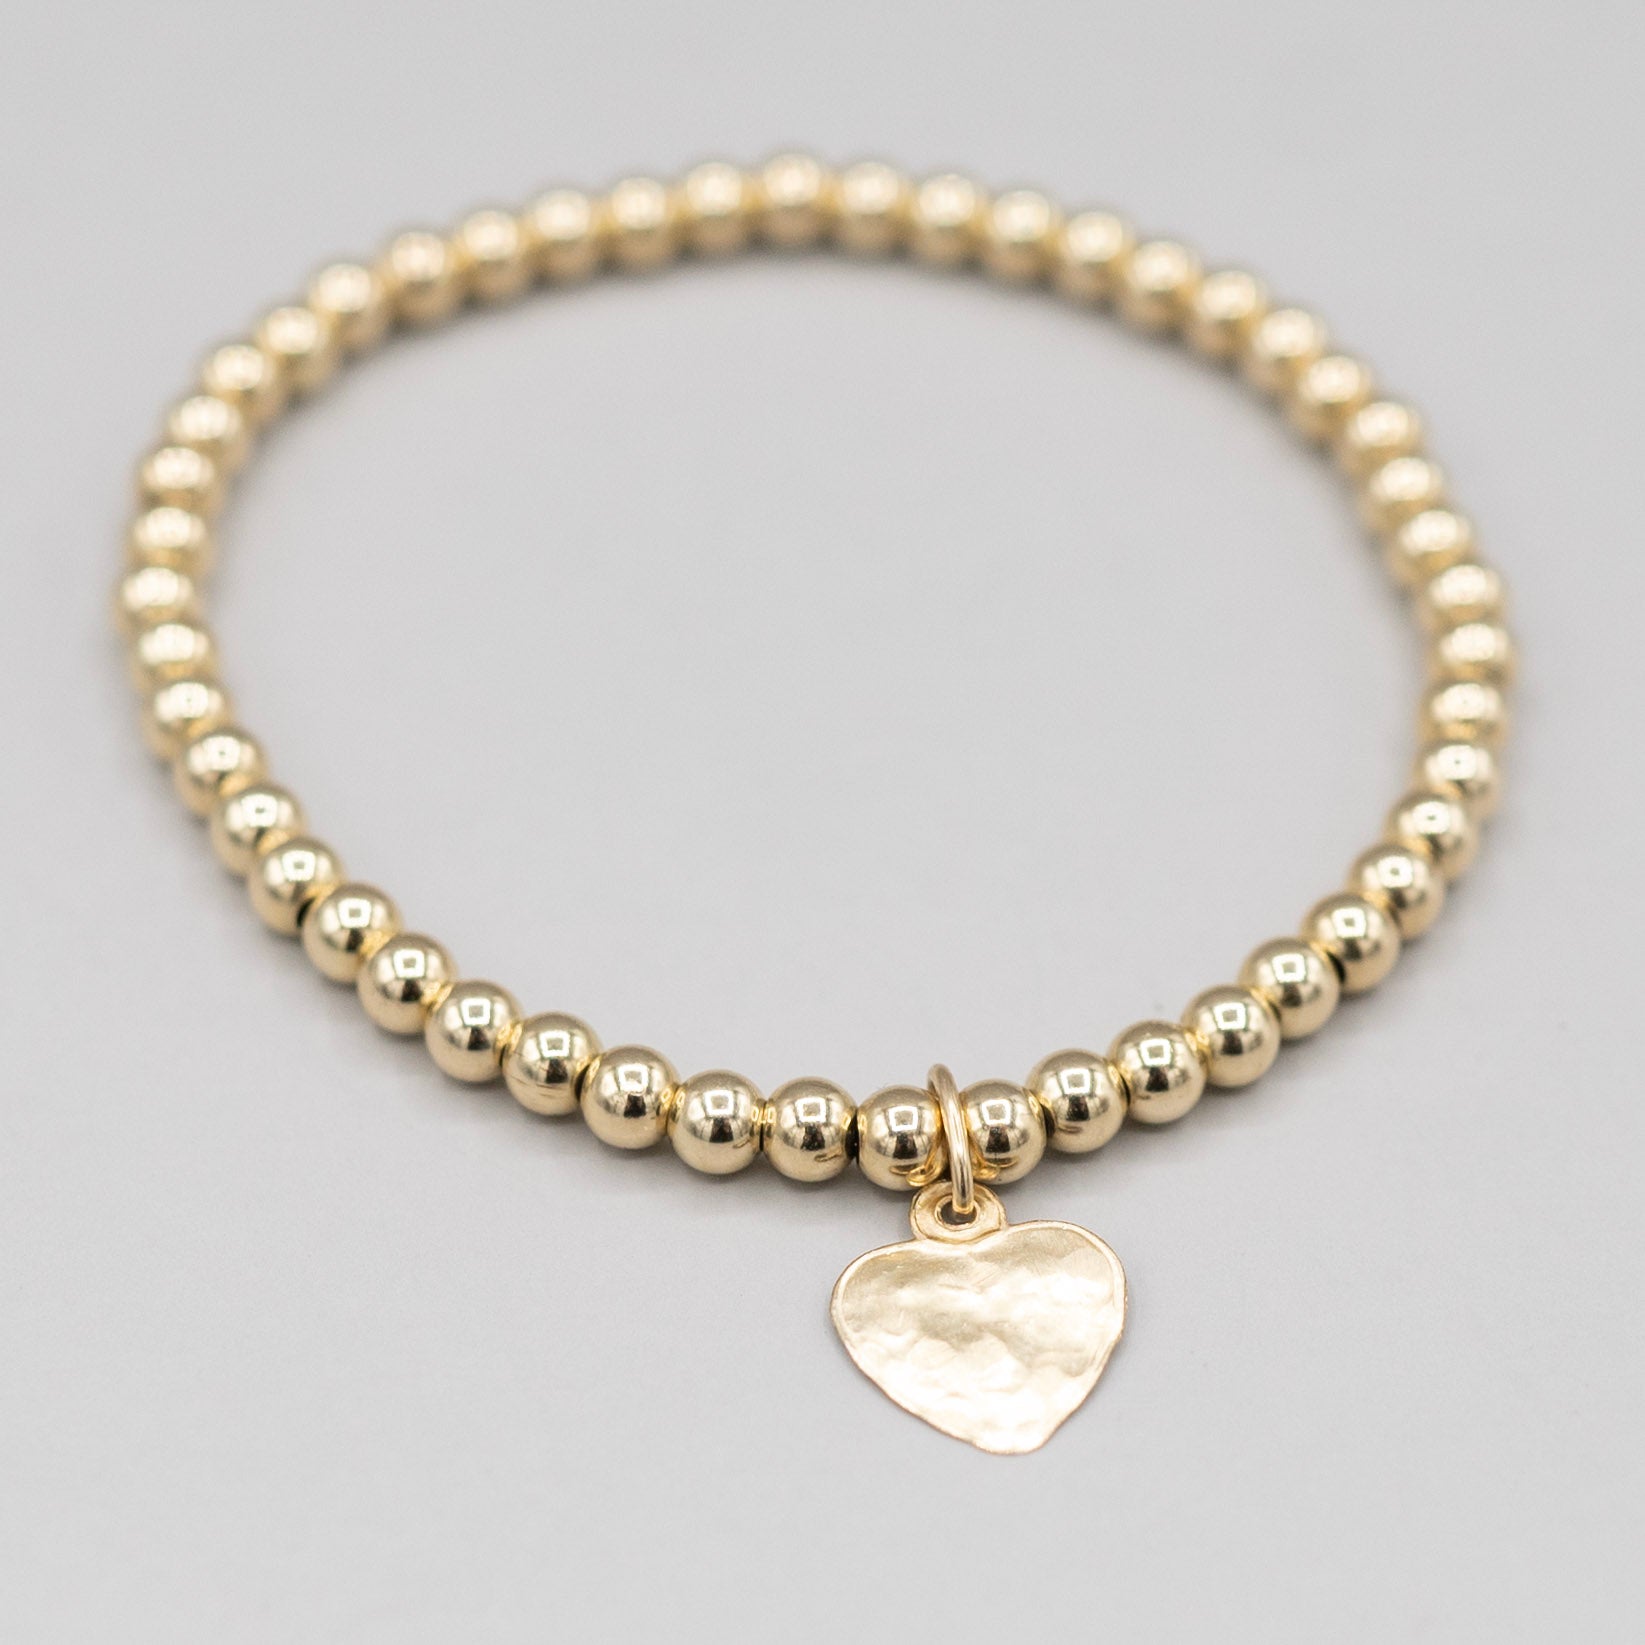 4mm 14k Gold Filled Heart Bracelet - Jewel Ya